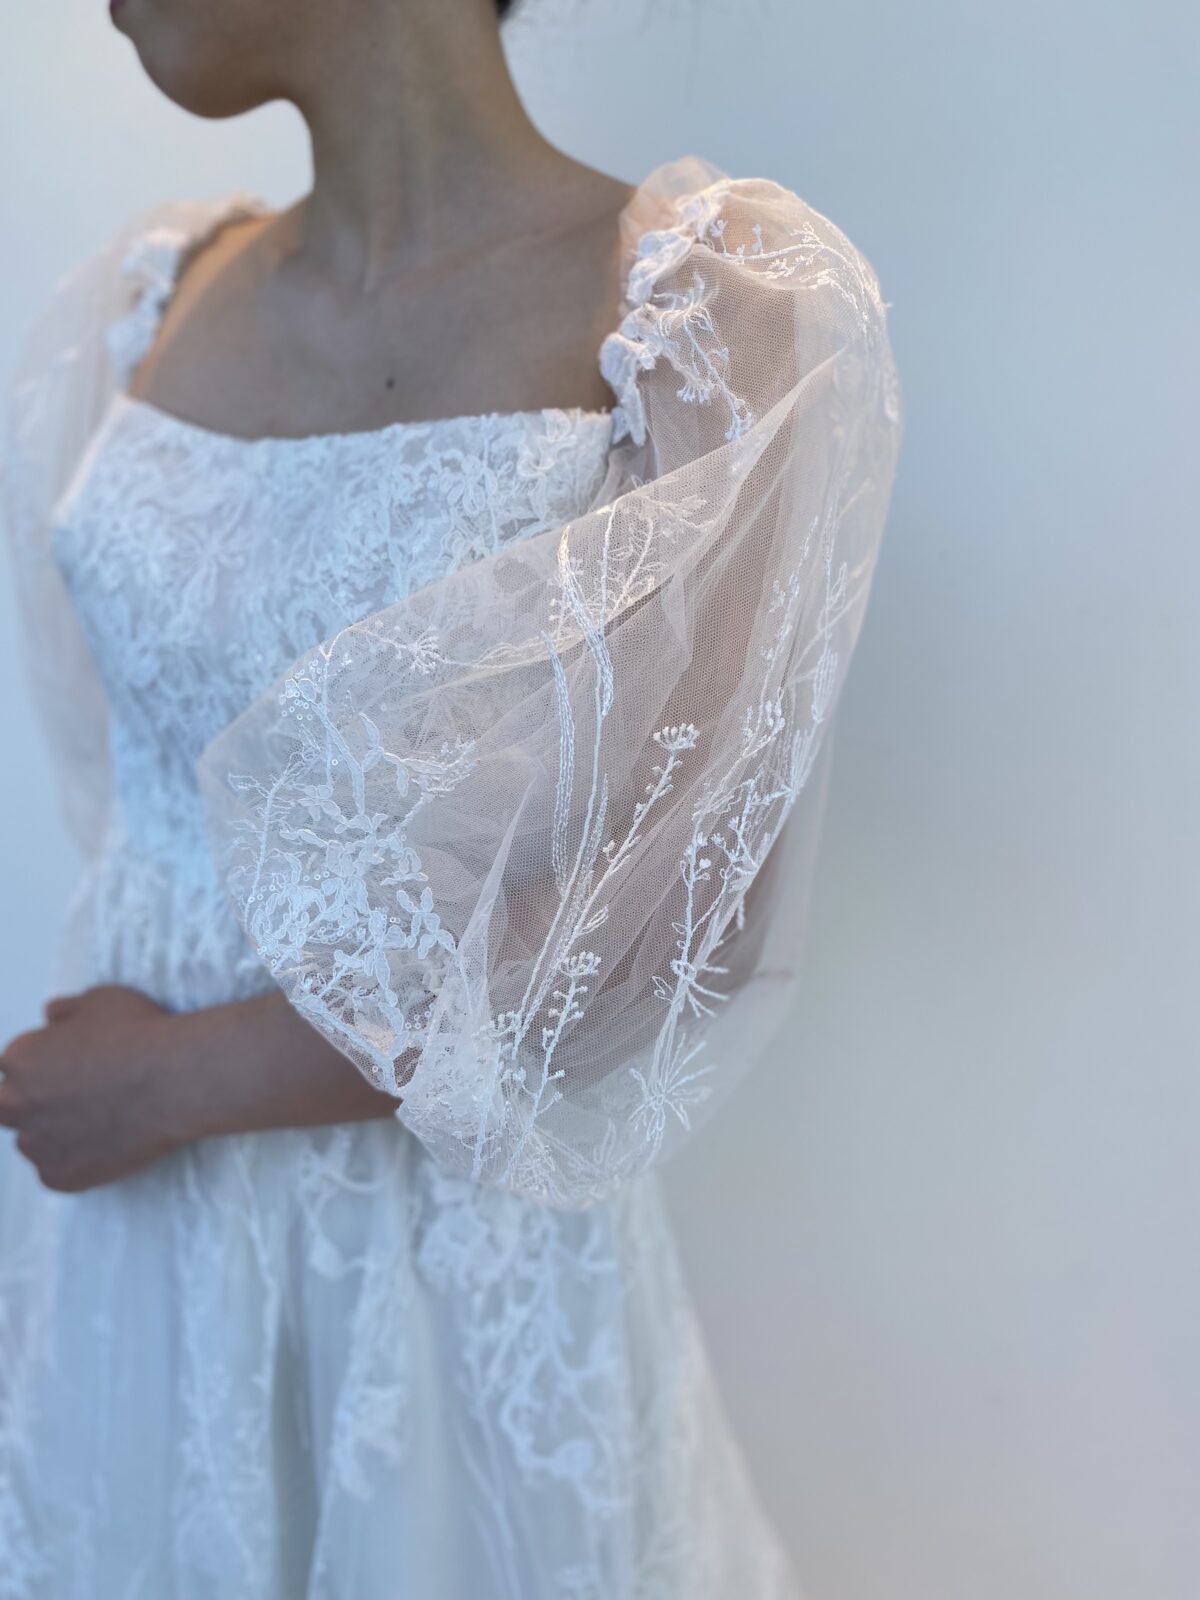 シアースリーブで透け感のあるレンタルウェディングドレスは素肌を綺麗に魅せてくれる一着